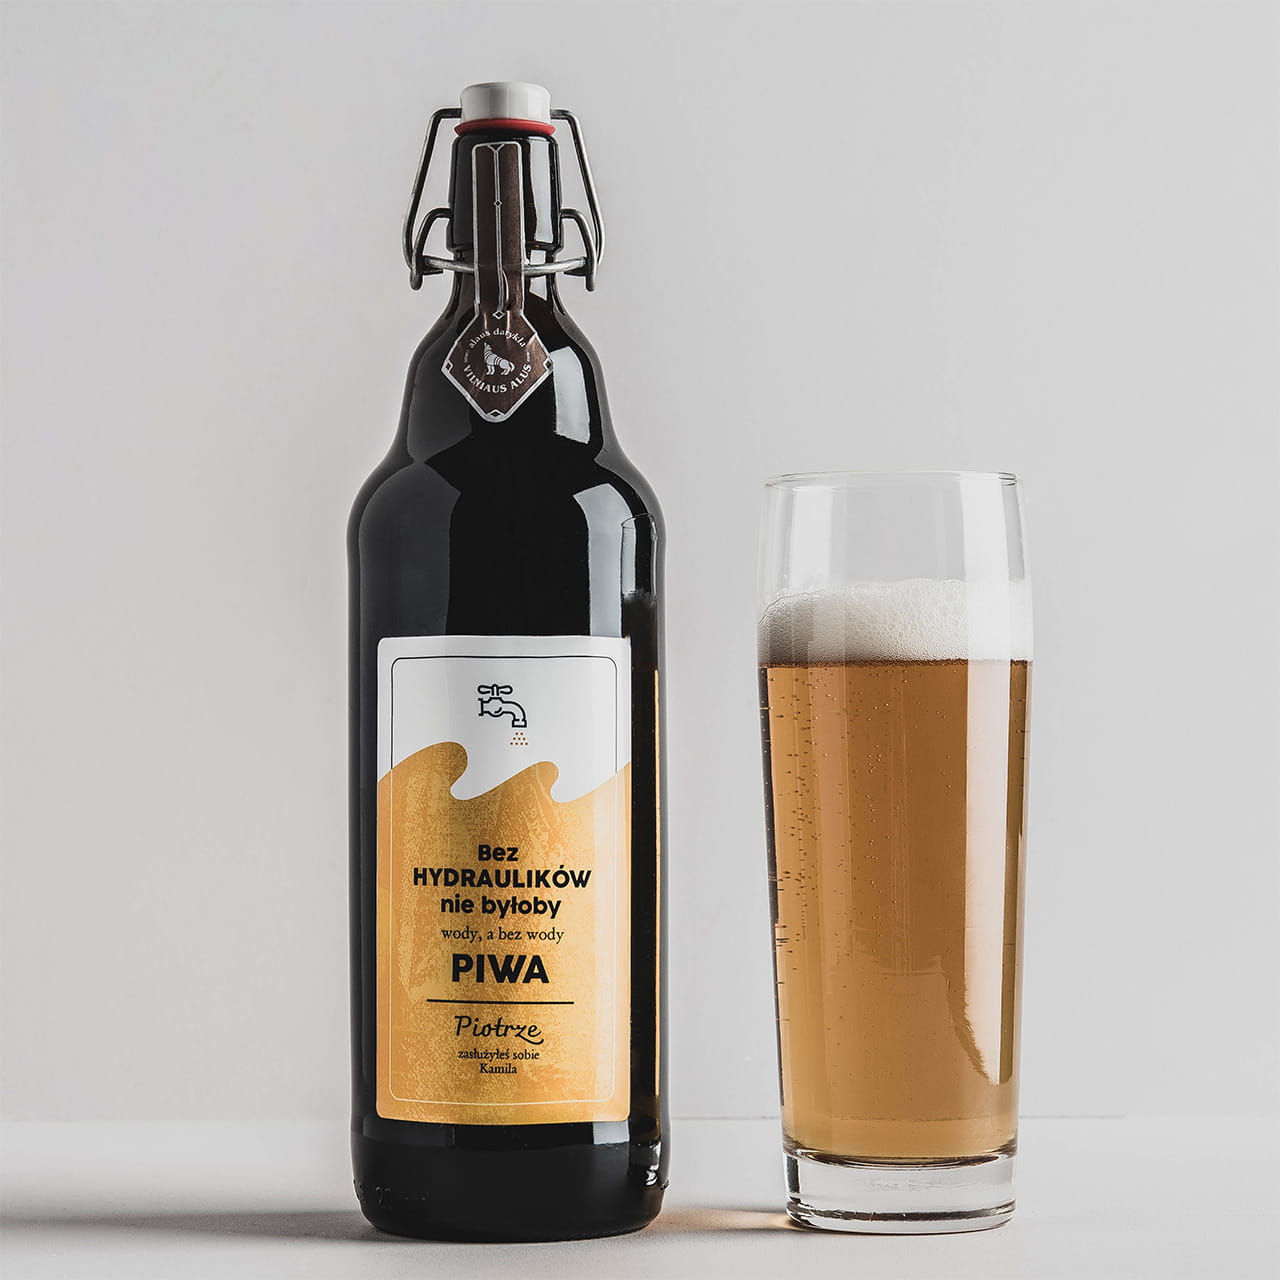 Personalizowane piwo PREZENT DLA HYDRAULIKA 1 litr